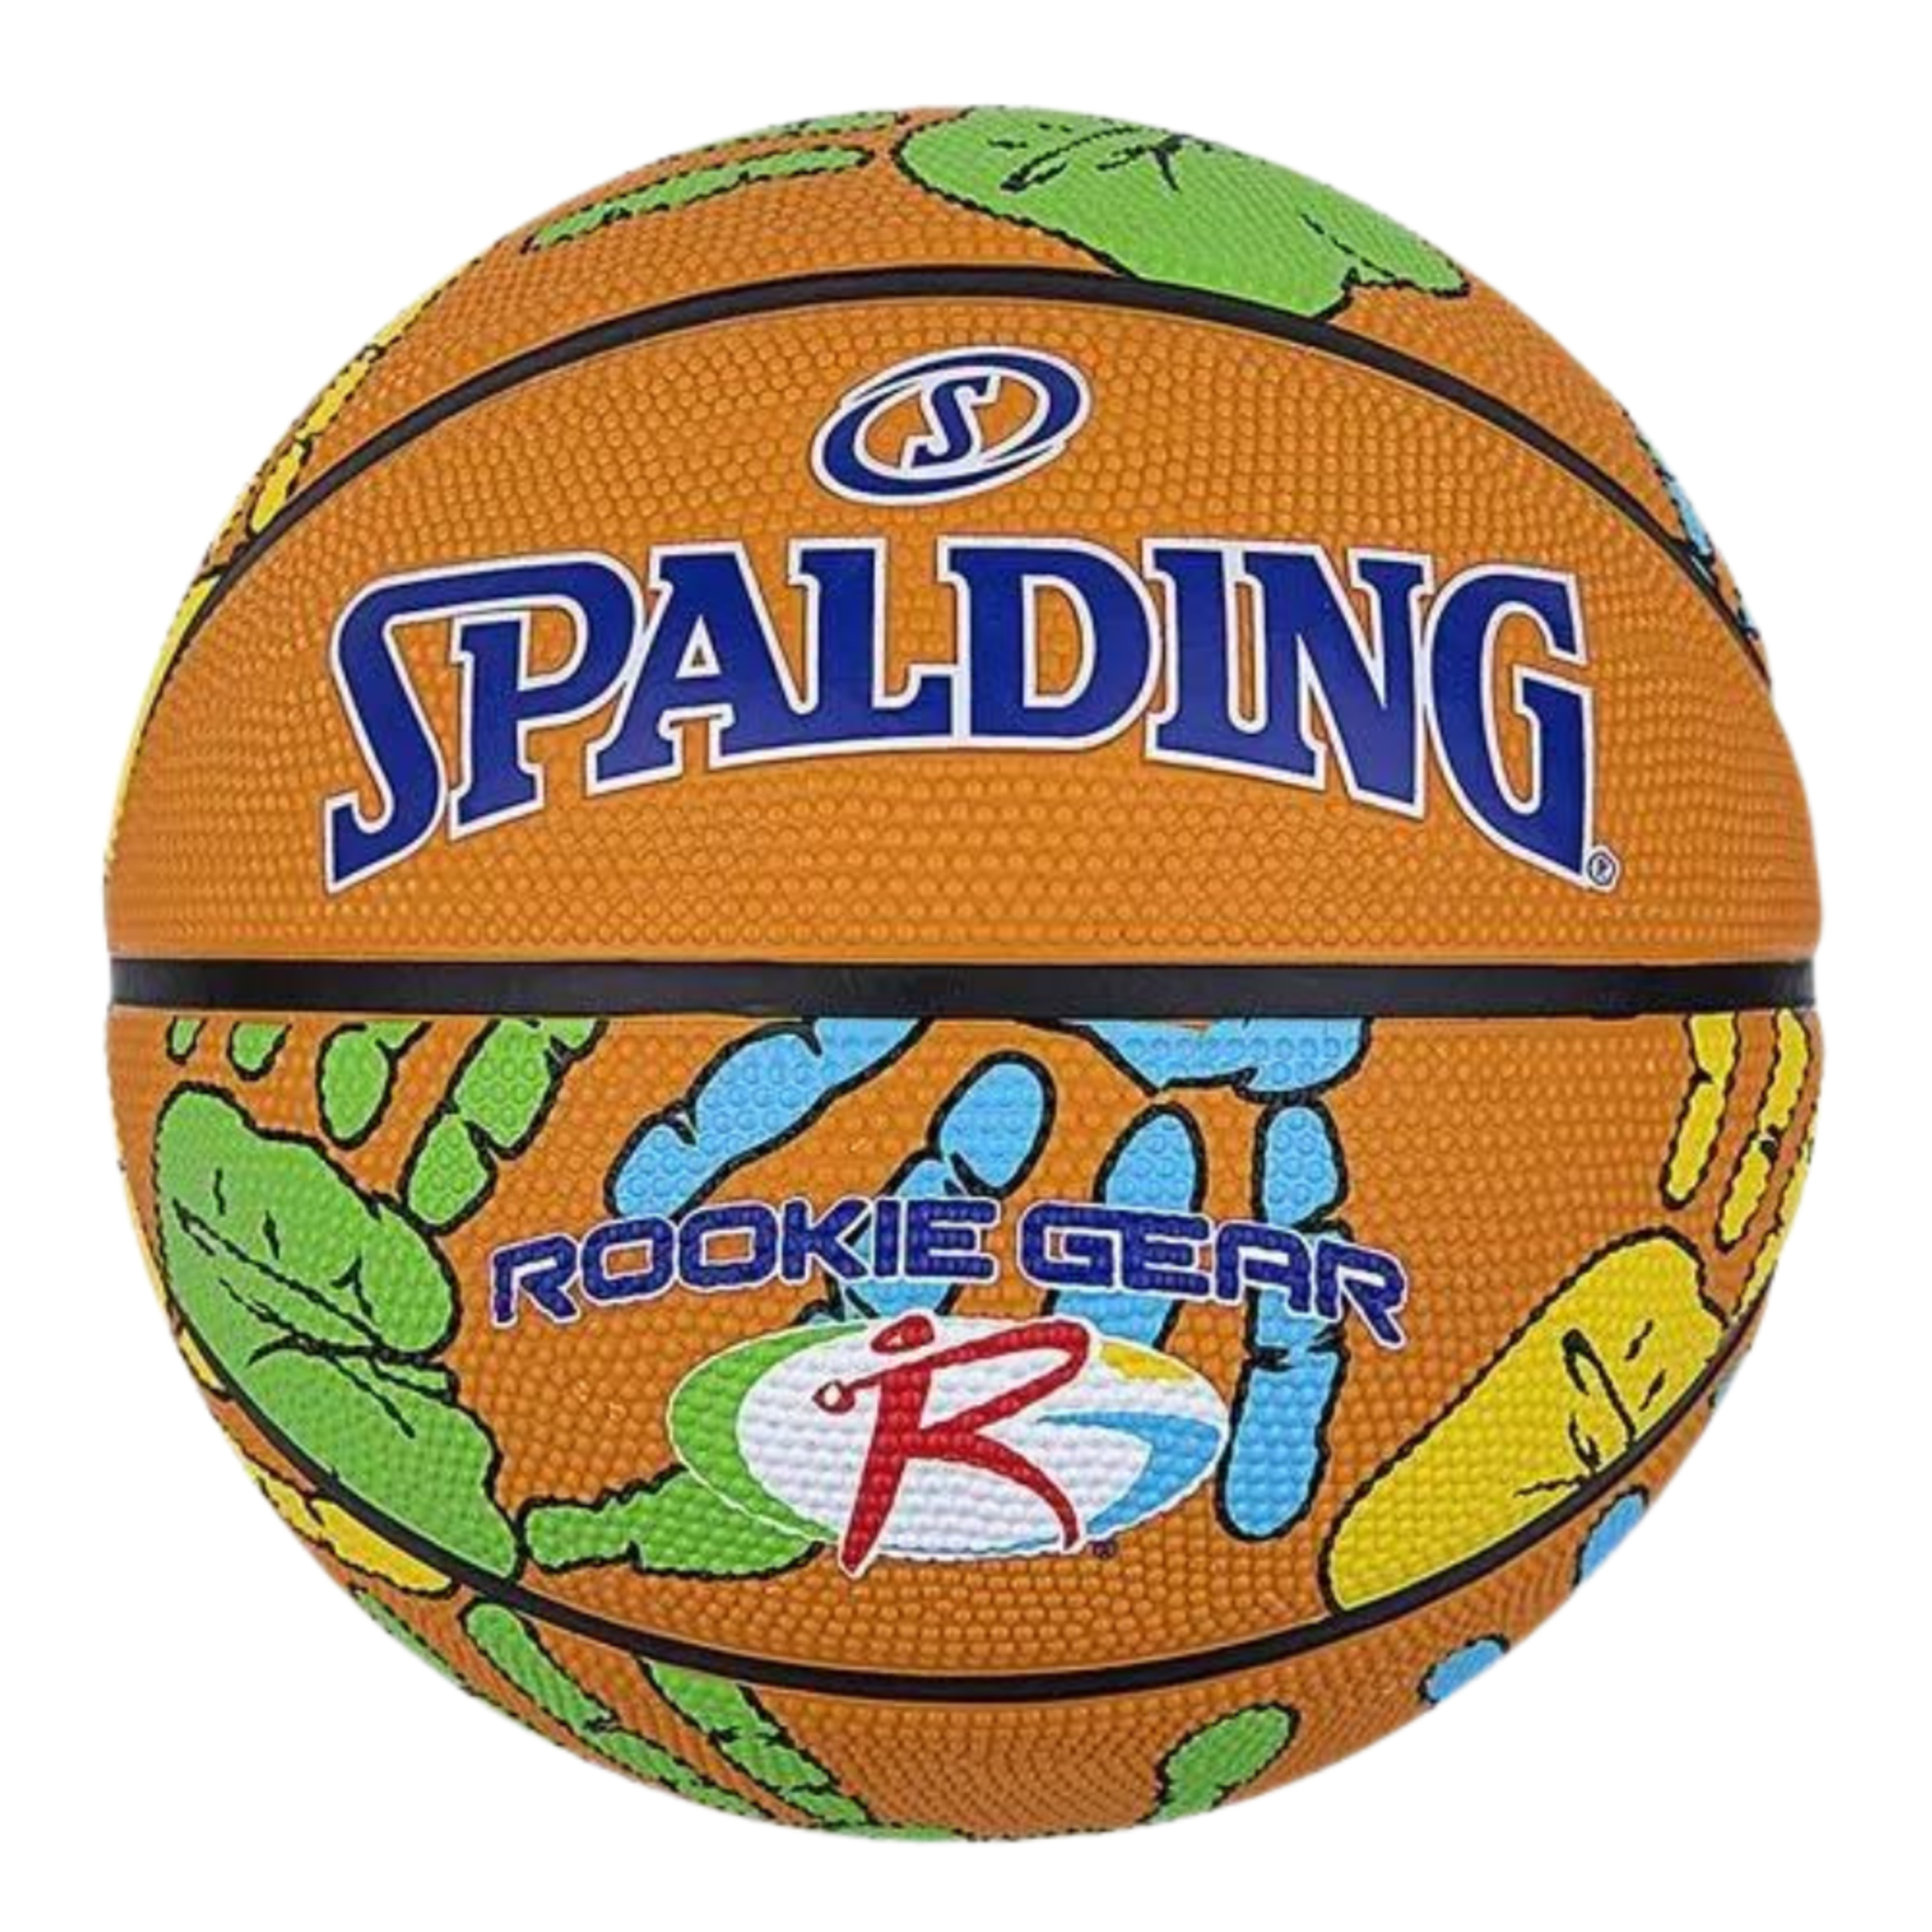 Balón De Baloncesto Spalding Rookie Gear Hands Sz4 Rubber - naranja - 